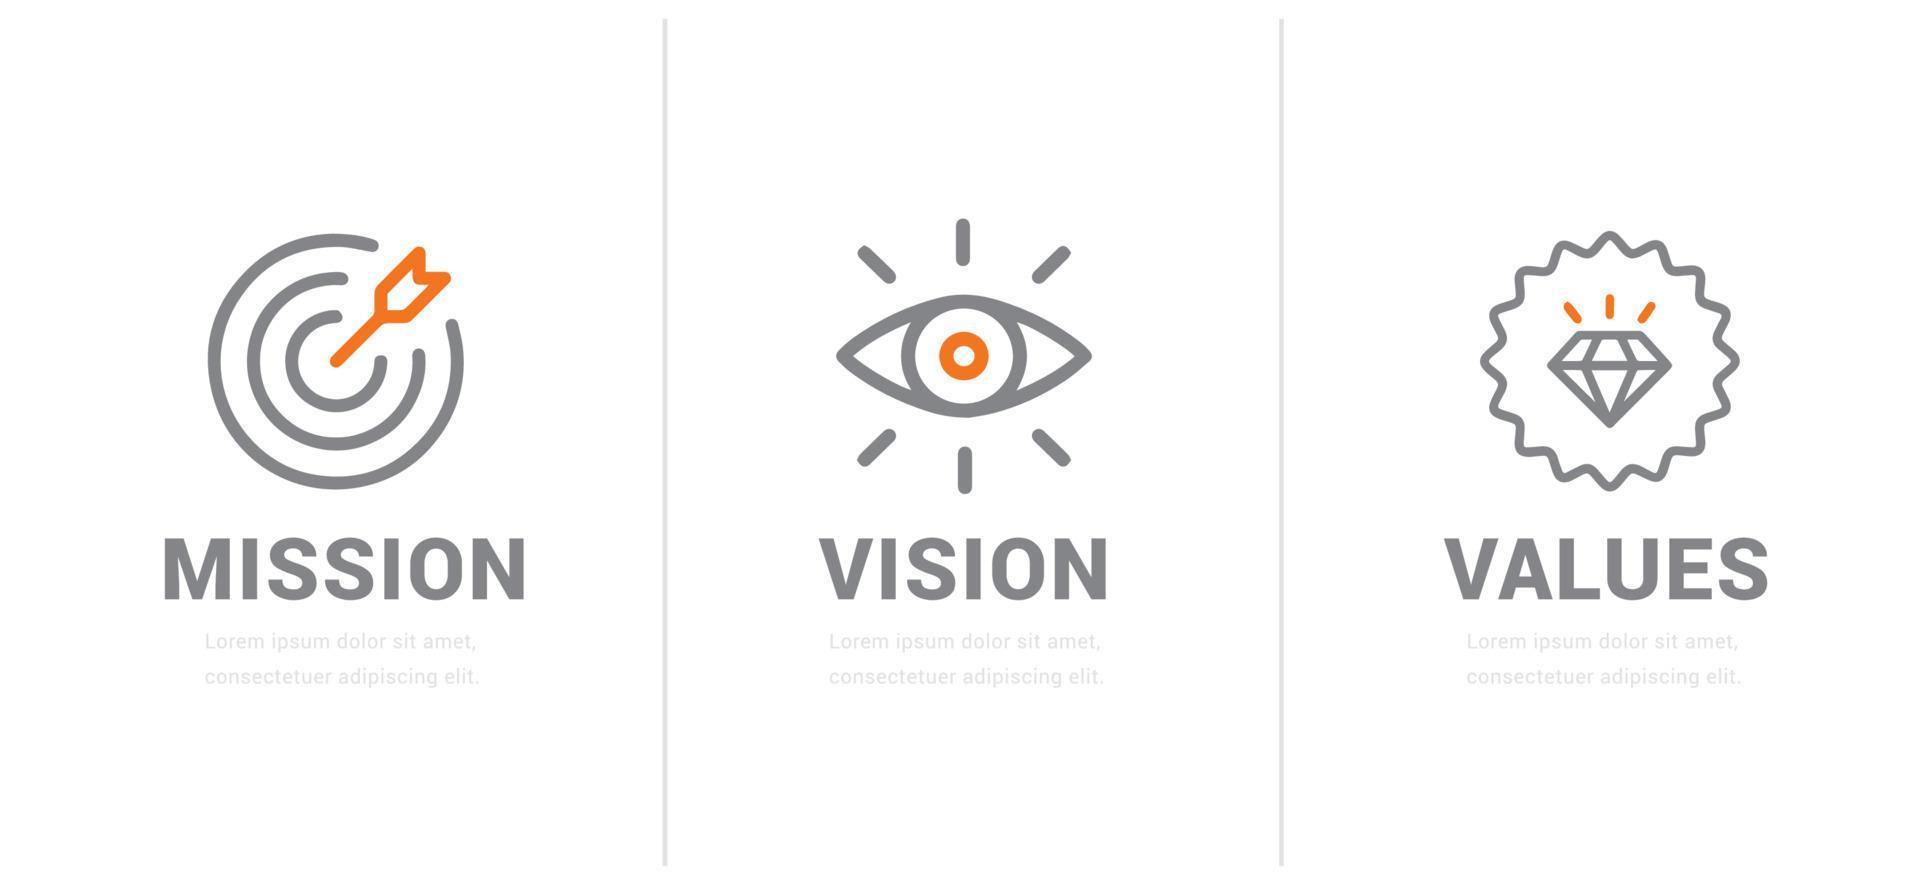 mission. vision. valeurs. modèle de page Web. concept de design plat moderne. vecteur eps 10.